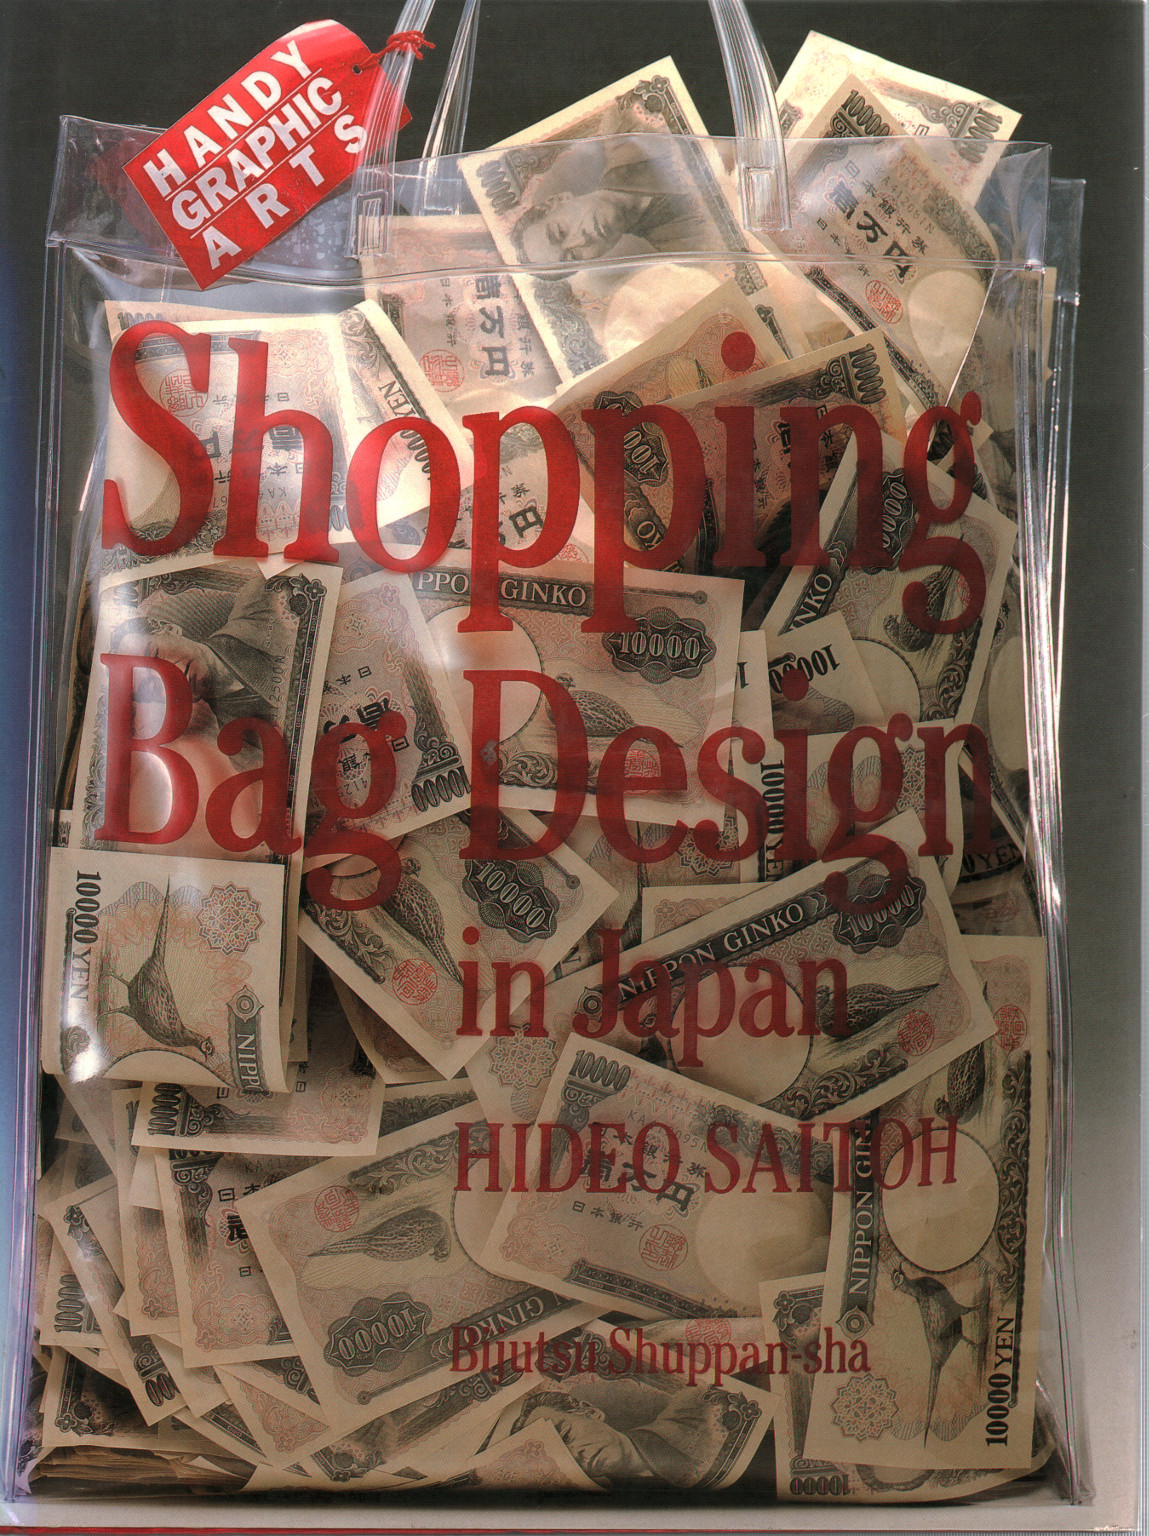 Design von Einkaufstaschen in Japan, s.a.